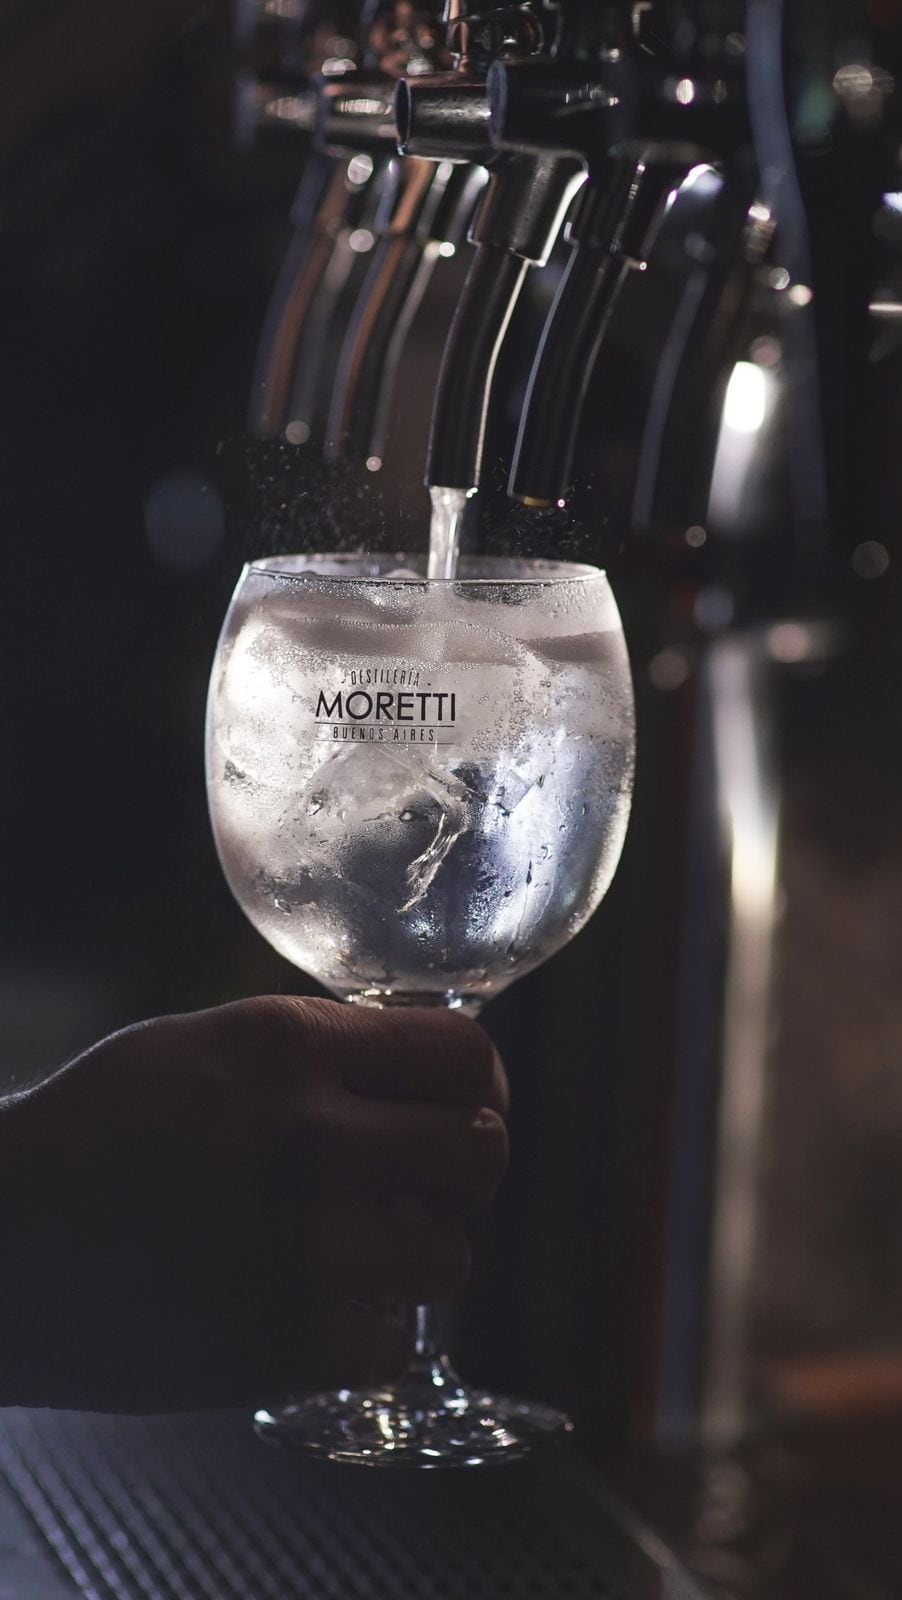 Los hermanos Moretti, innovadores del gin tonic tirado, propusieron cinco combinaciones para disfrutar de este cóctel